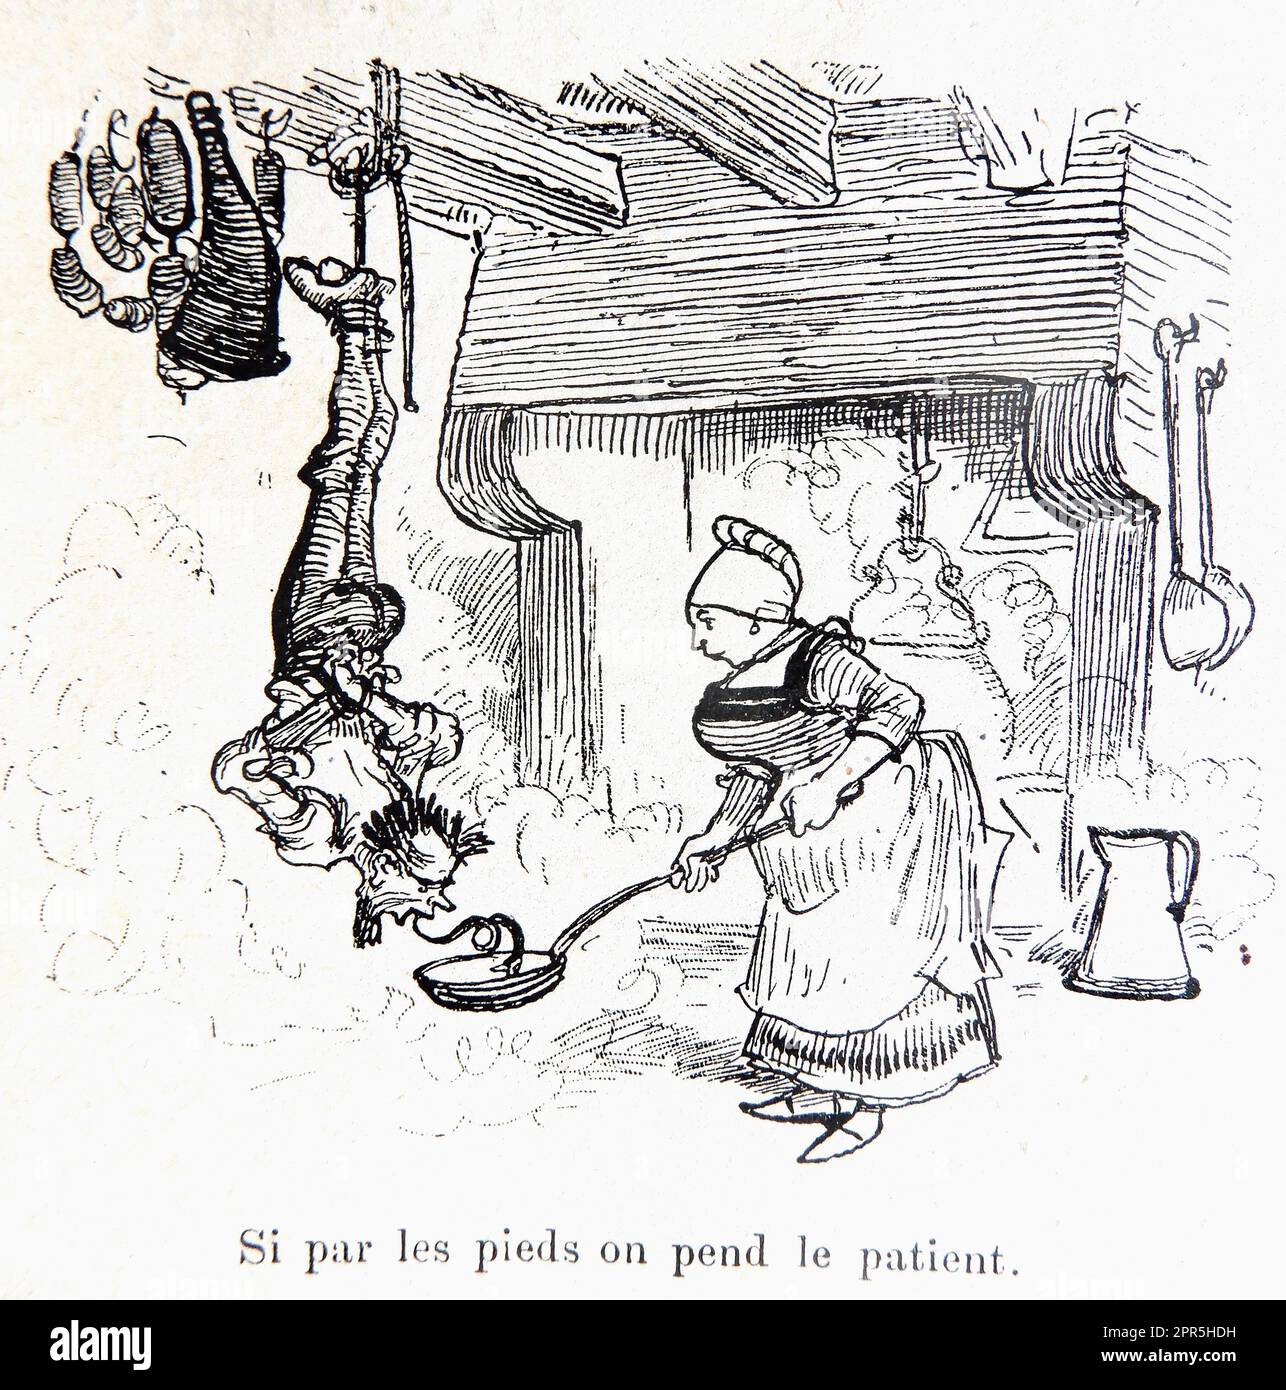 Albert Robida - si par les pieds nous accrochons le patient - il apprendra bientôt sa leçon - 1886 Banque D'Images